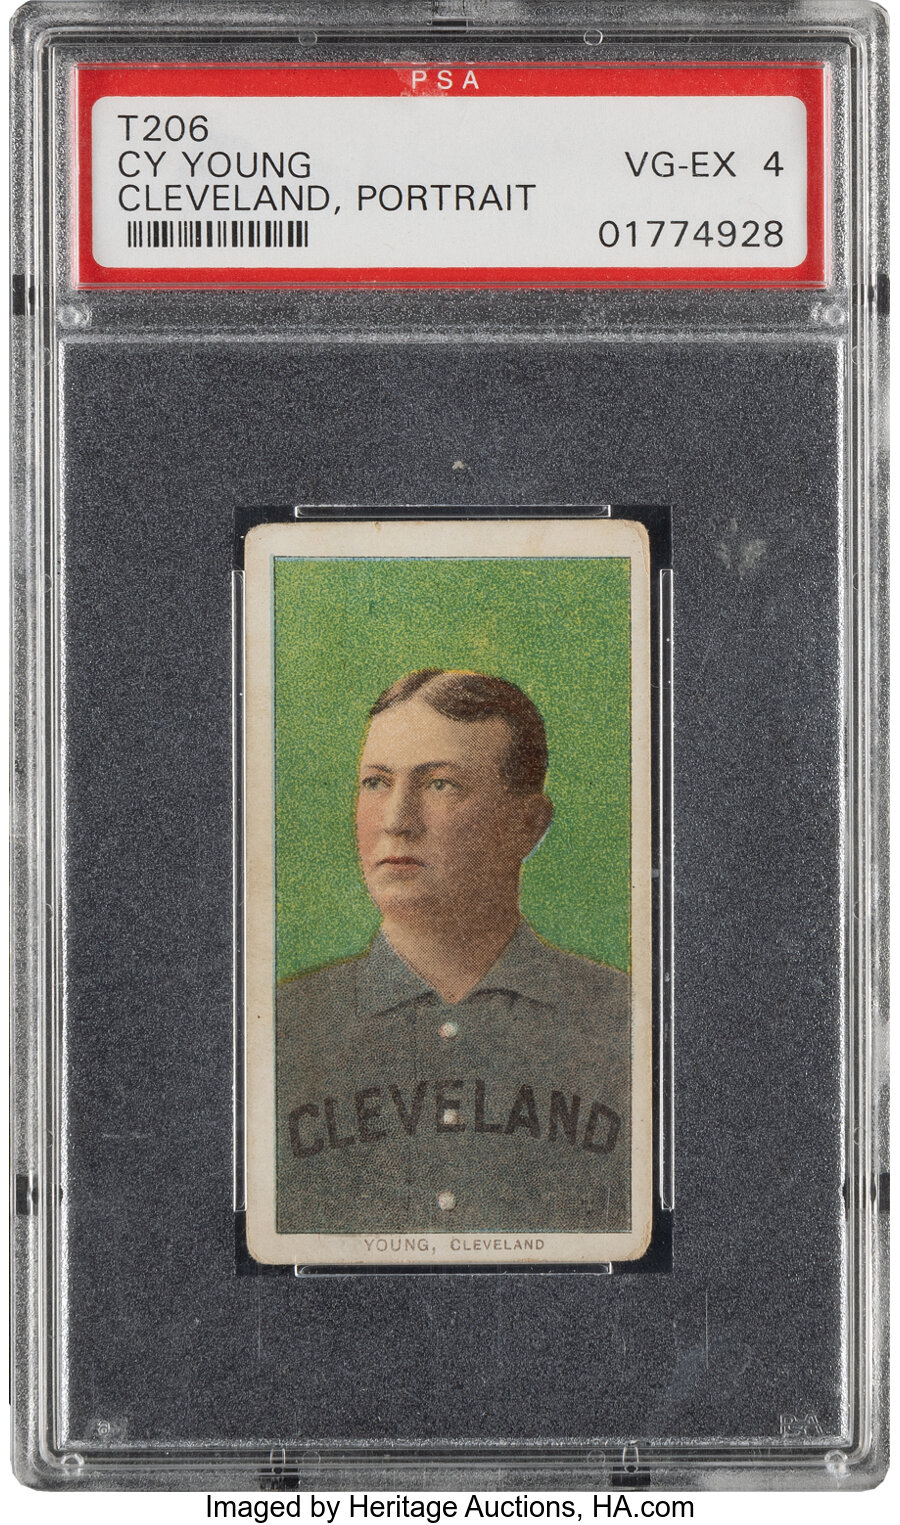 1909-11 T206 Piedmont Cy Young (Cleveland, Portrait) PSA VG-EX 4